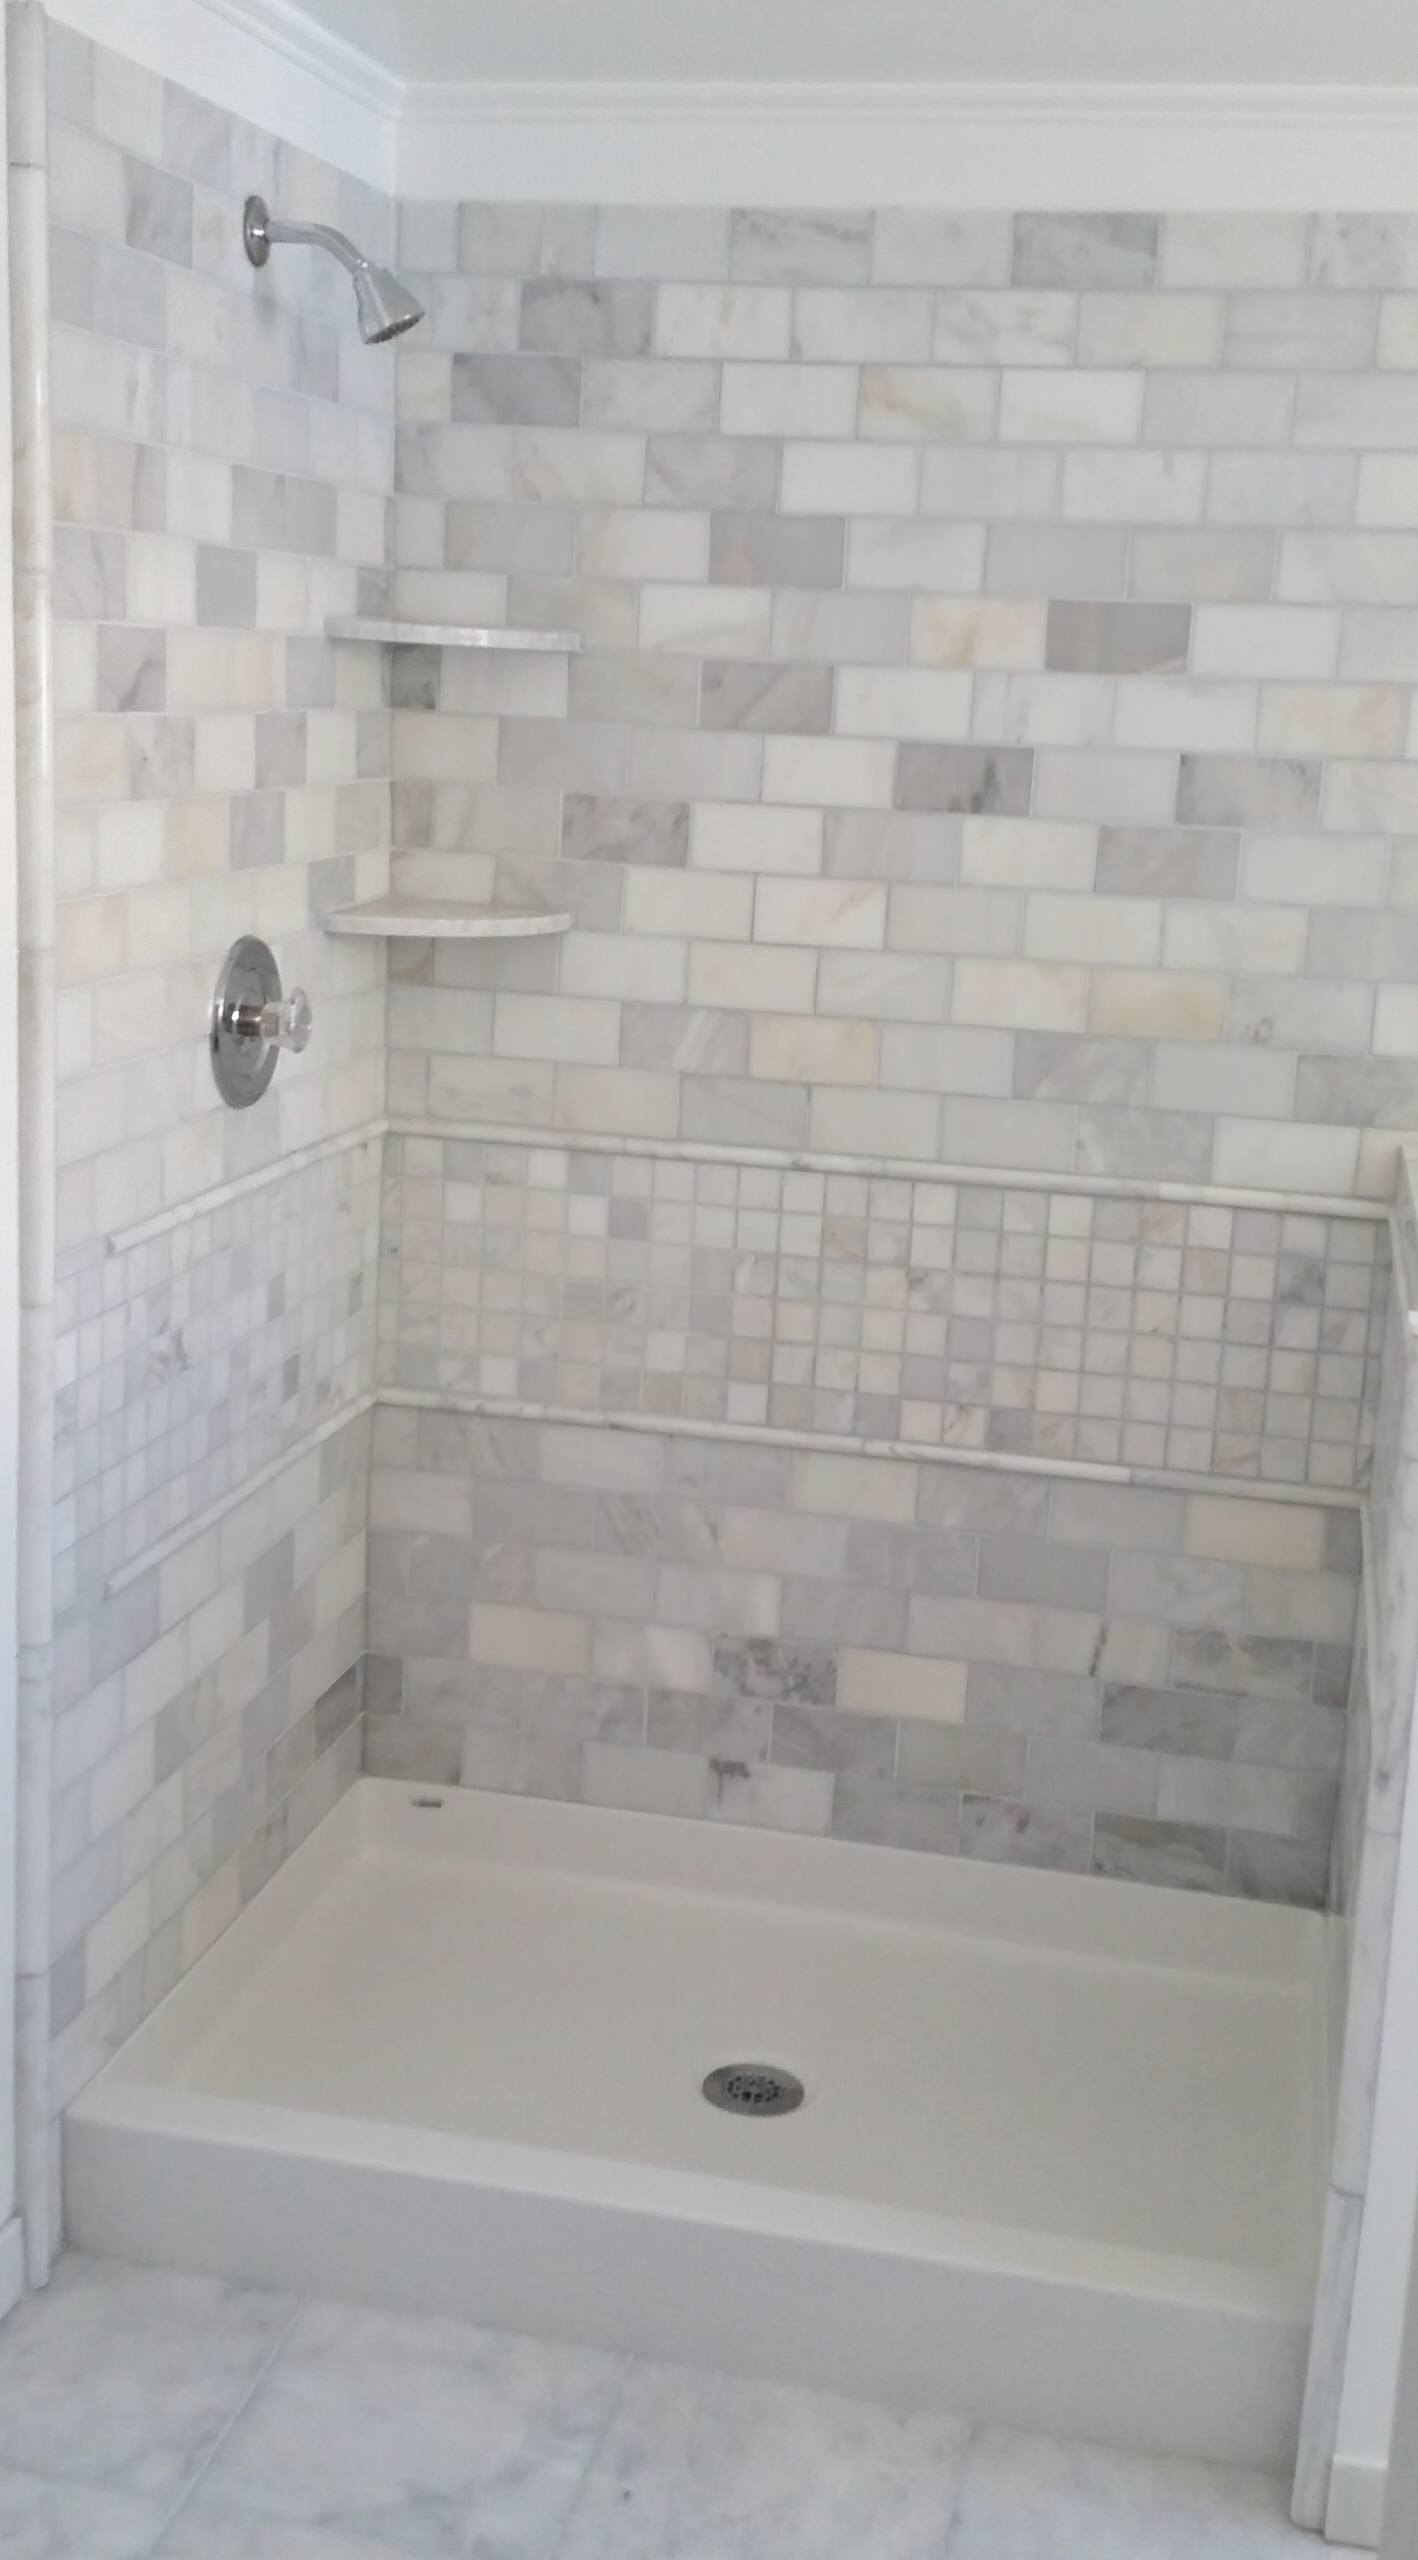 48 Inch Shower Bathroom Ideas Houzz, Tiling A Bathtub Surround Ideas